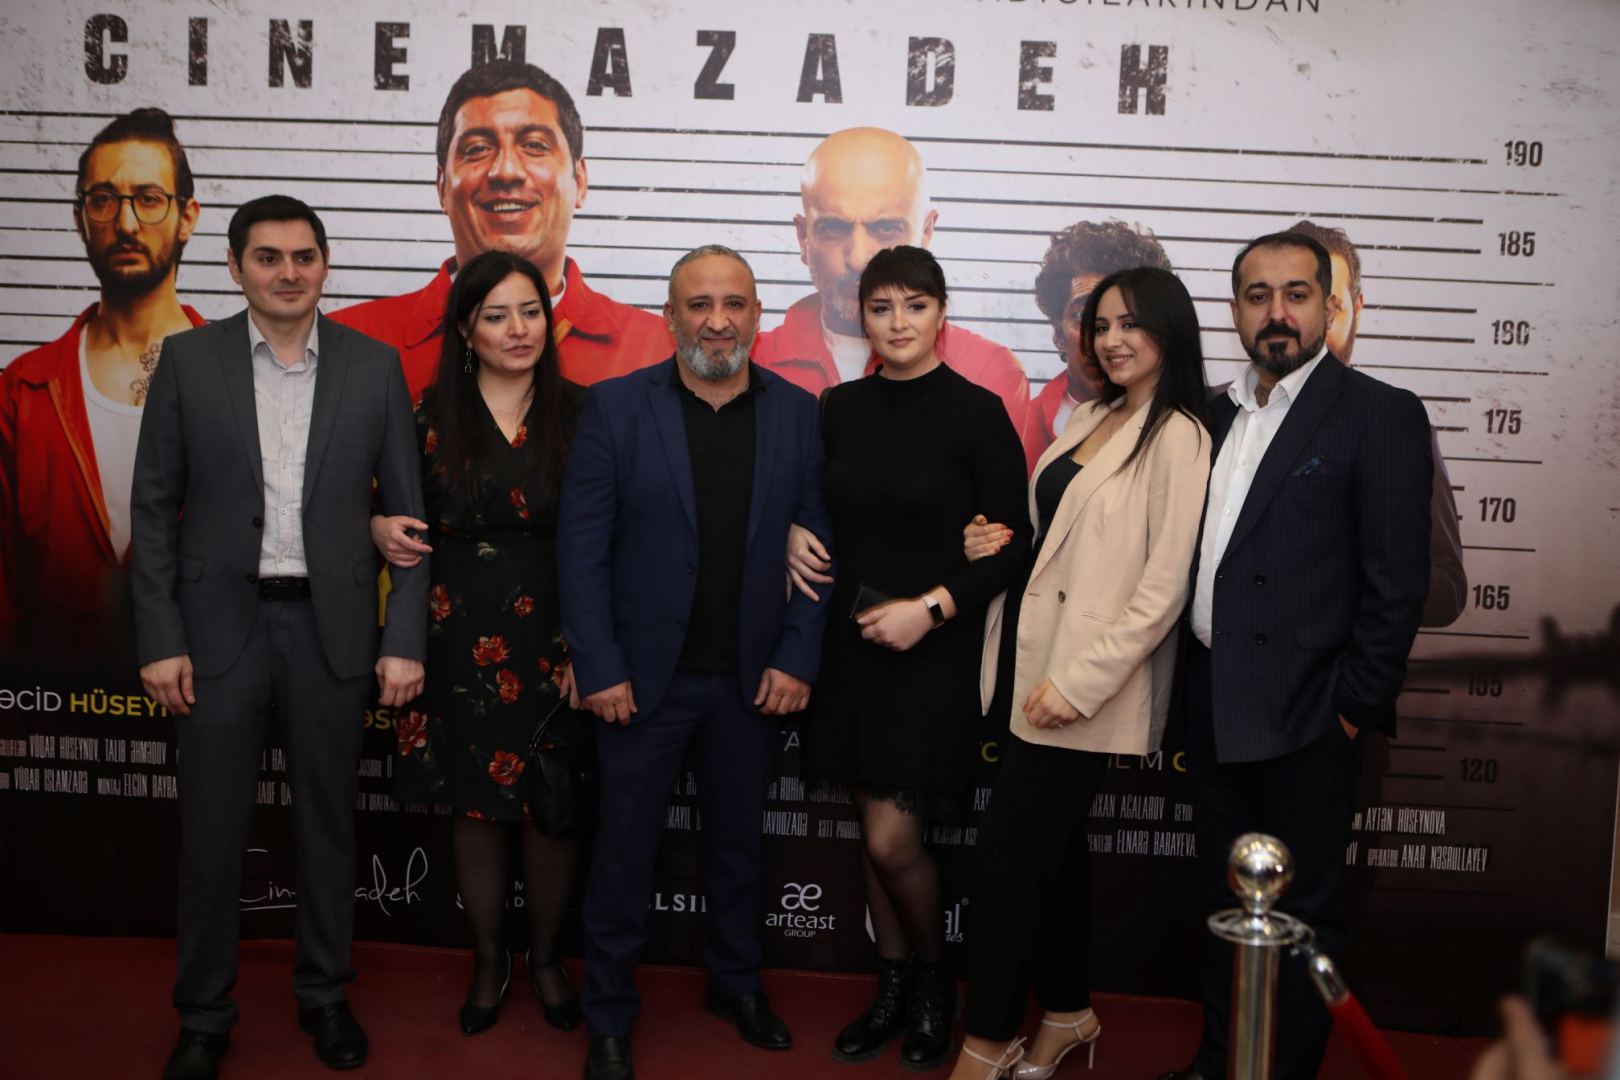 В Баку состоялась премьера фильма Zona (ФОТО/ВИДЕО)